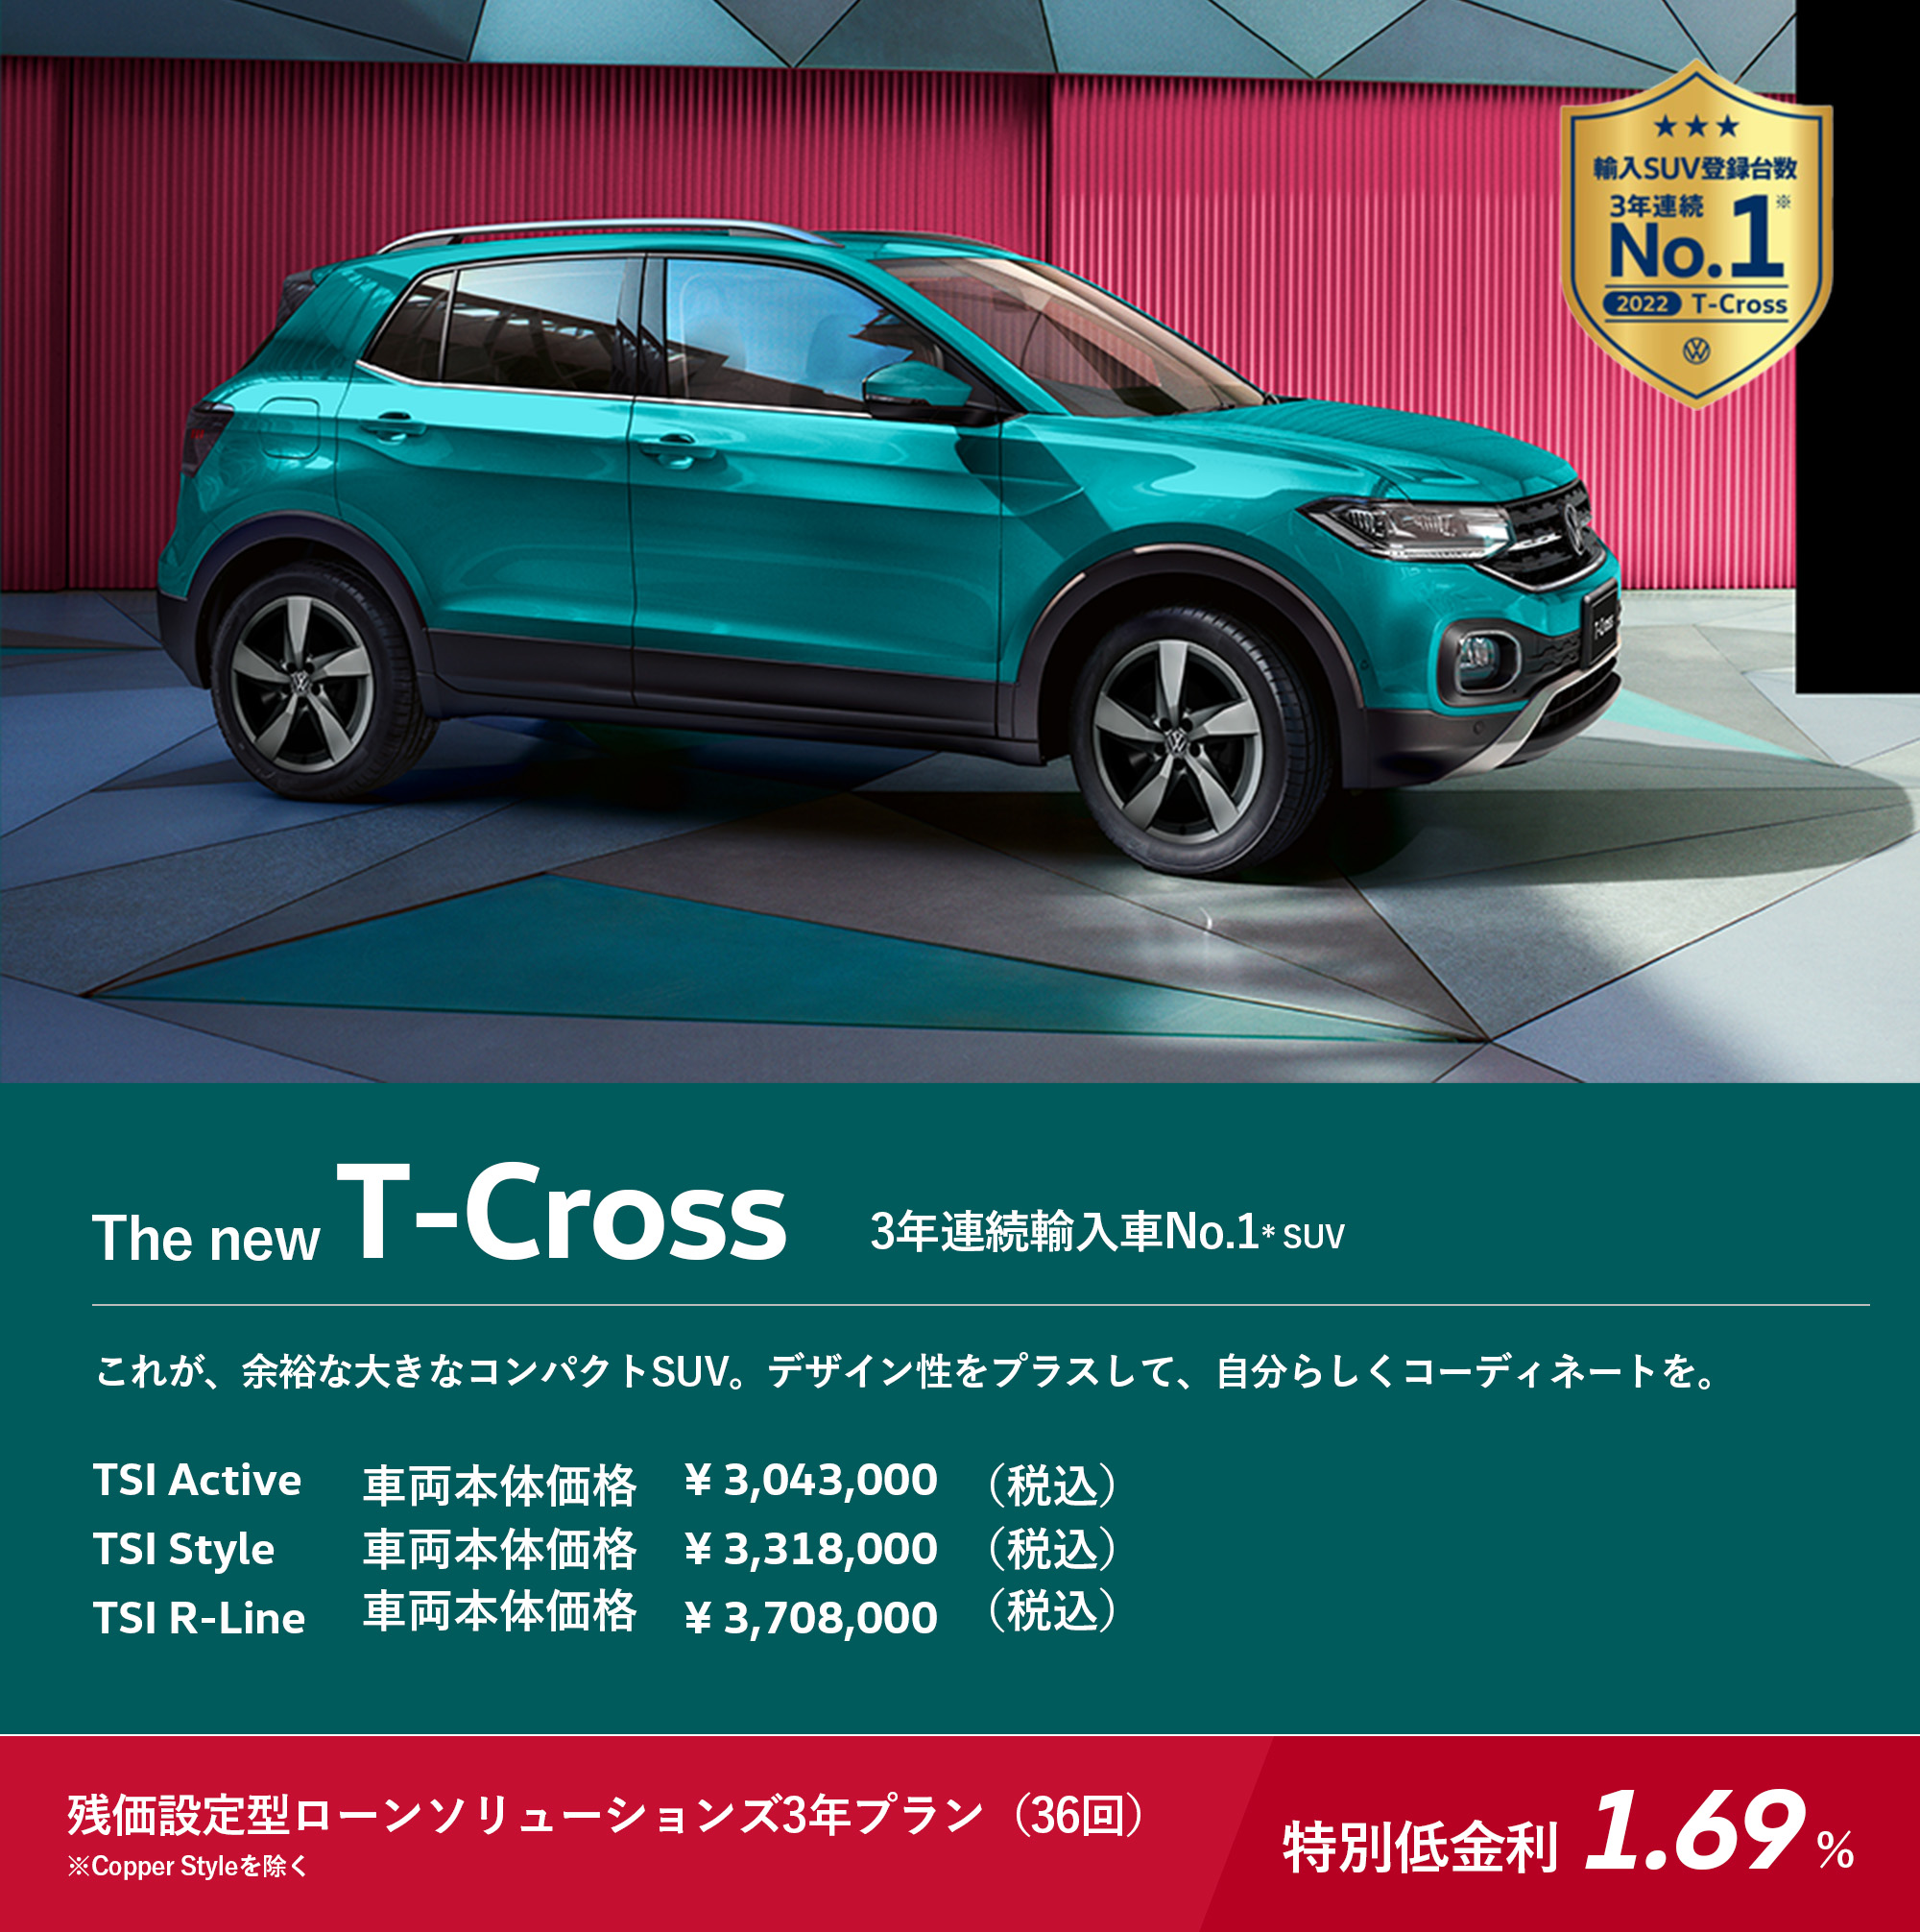 The new T-Cross 3年連続輸入車No.1* SUV これが、余裕な大きなコンパクトSUV。デザイン性をプラスして、自分らしくコーディネートを。